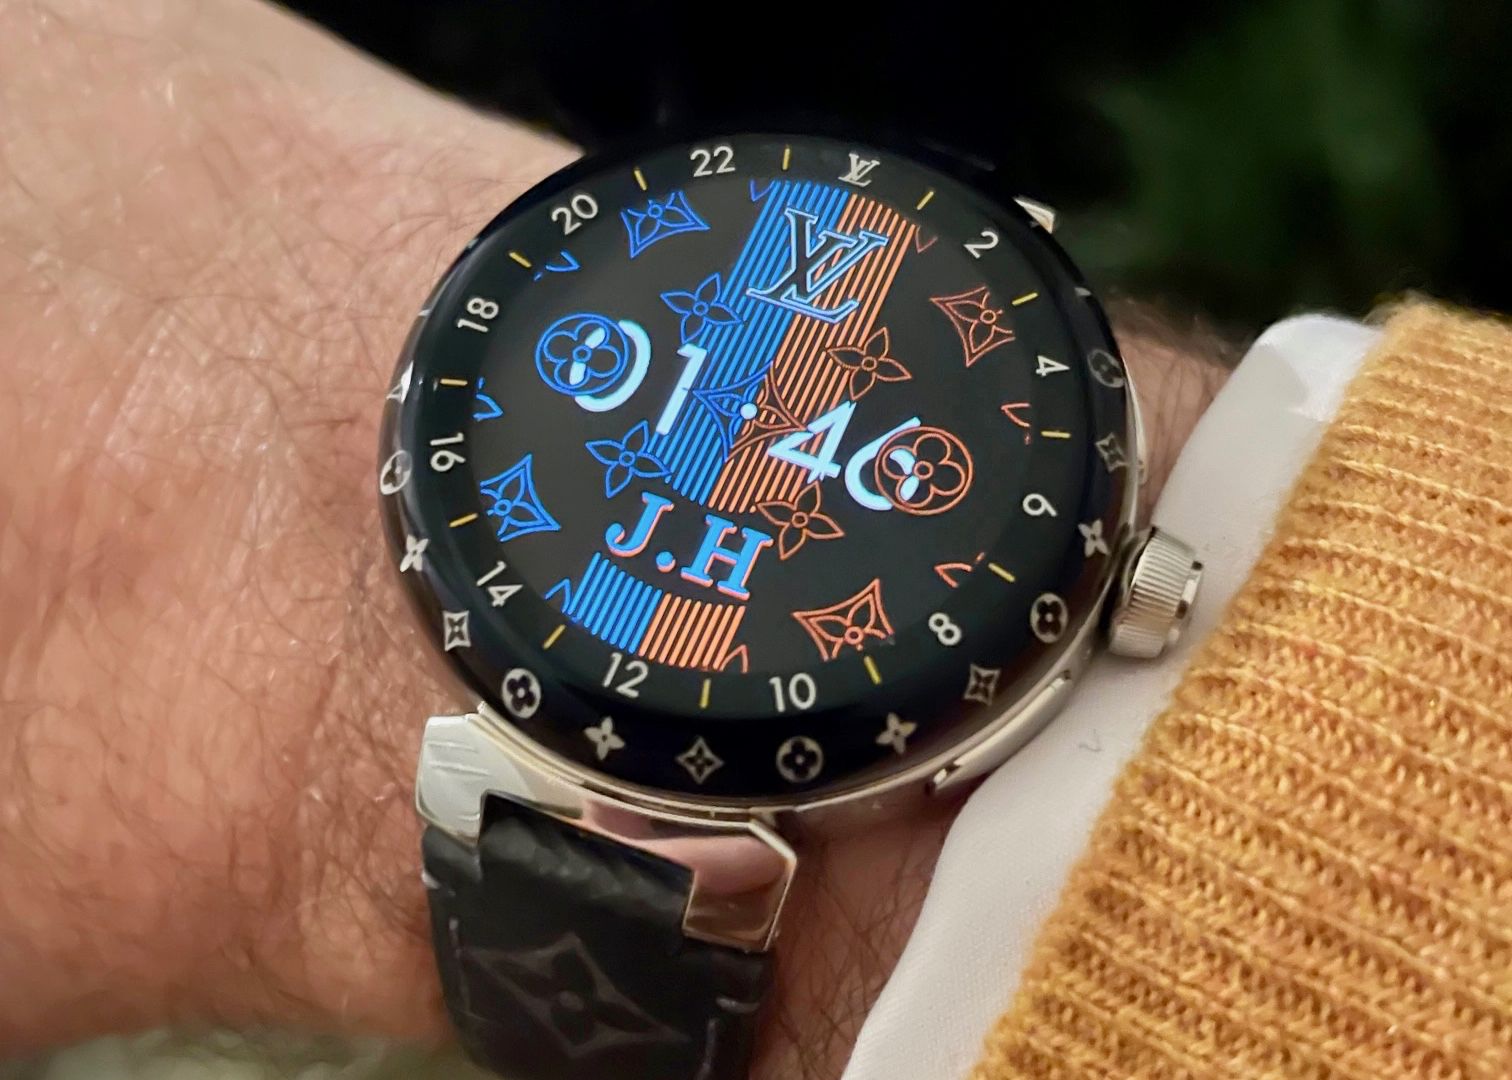 Louis Vuitton affranchit sa montre connectée Tambour Horizon de l'OS Google.